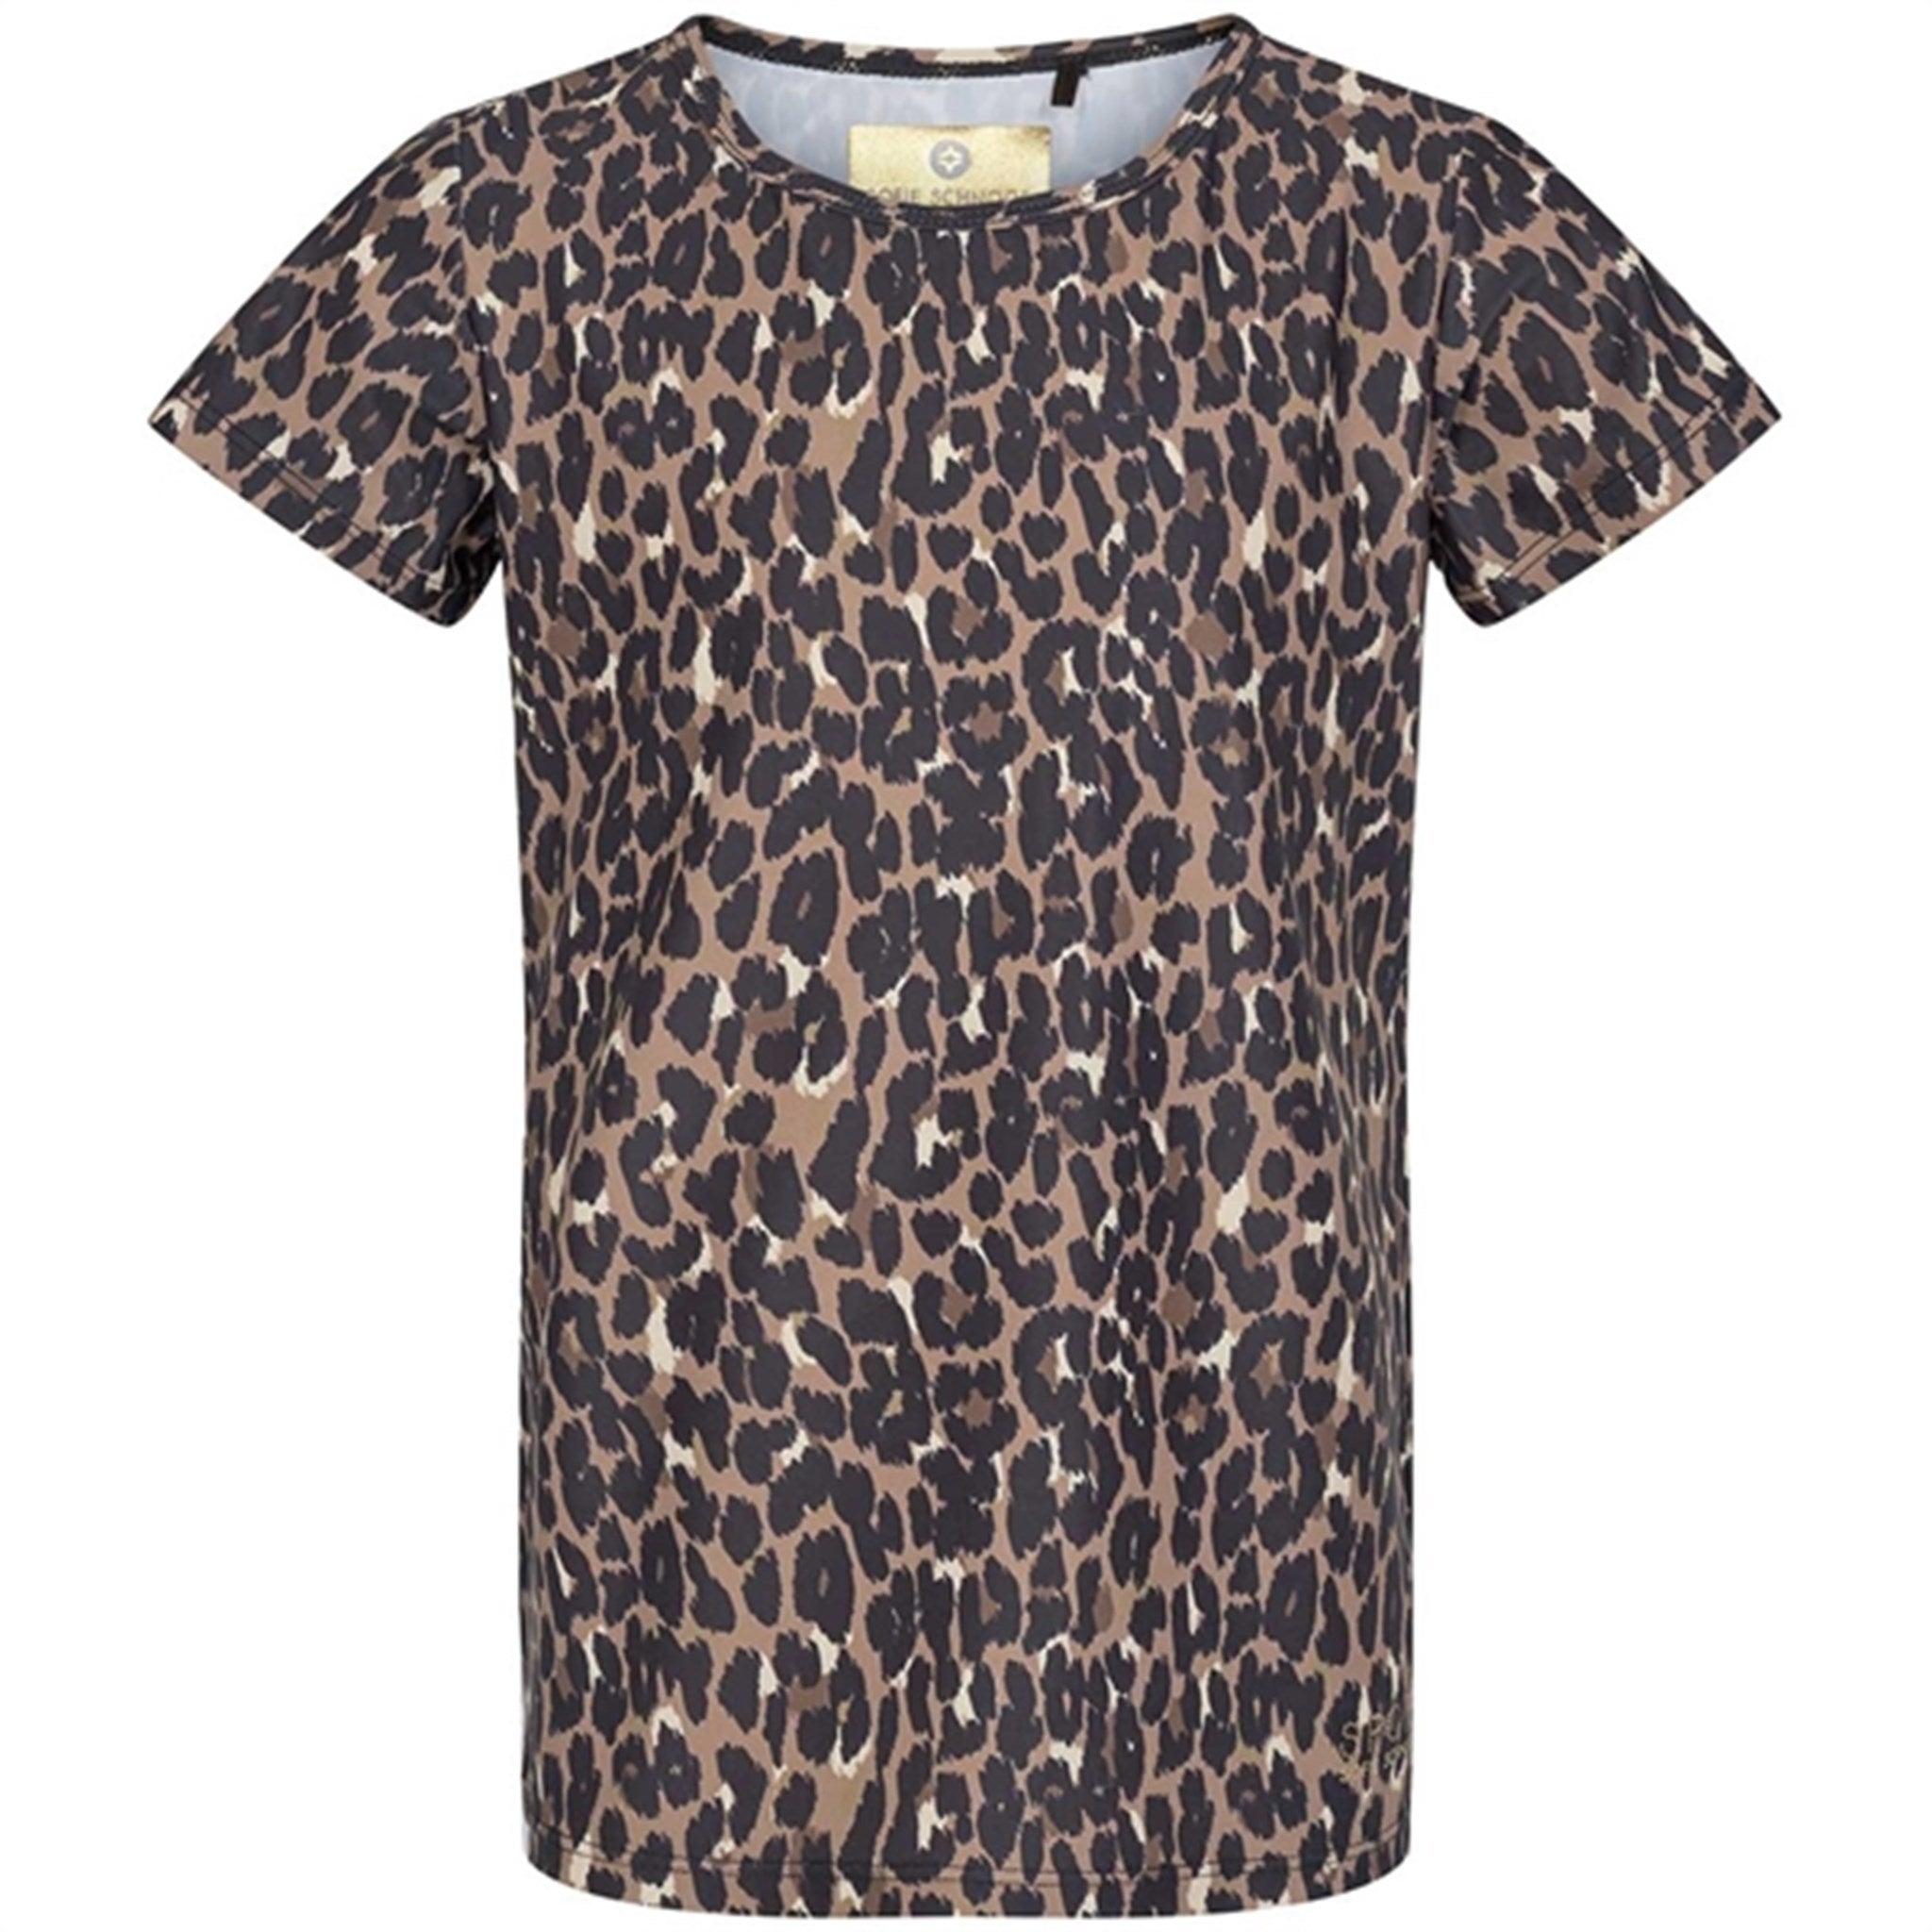 Sofie Schnoor Young Leopard Louisa T-shirt 4